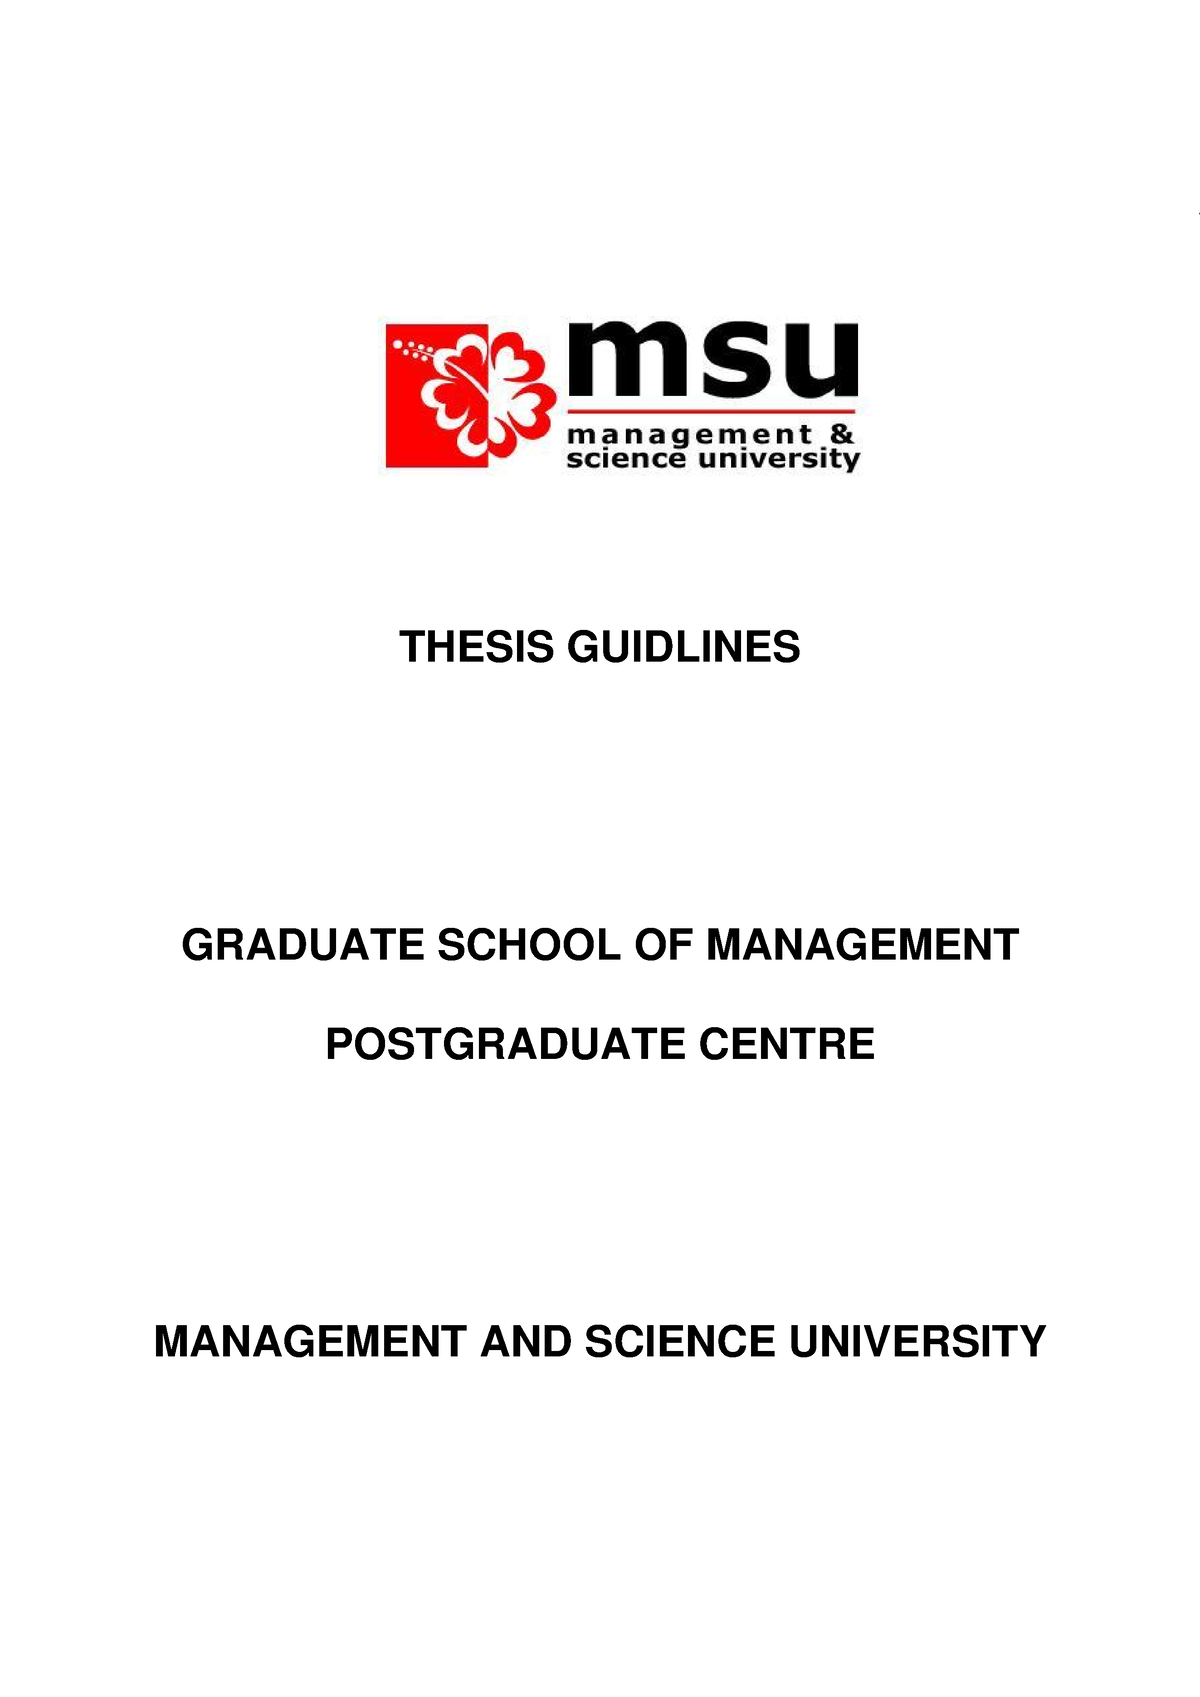 msu thesis repository